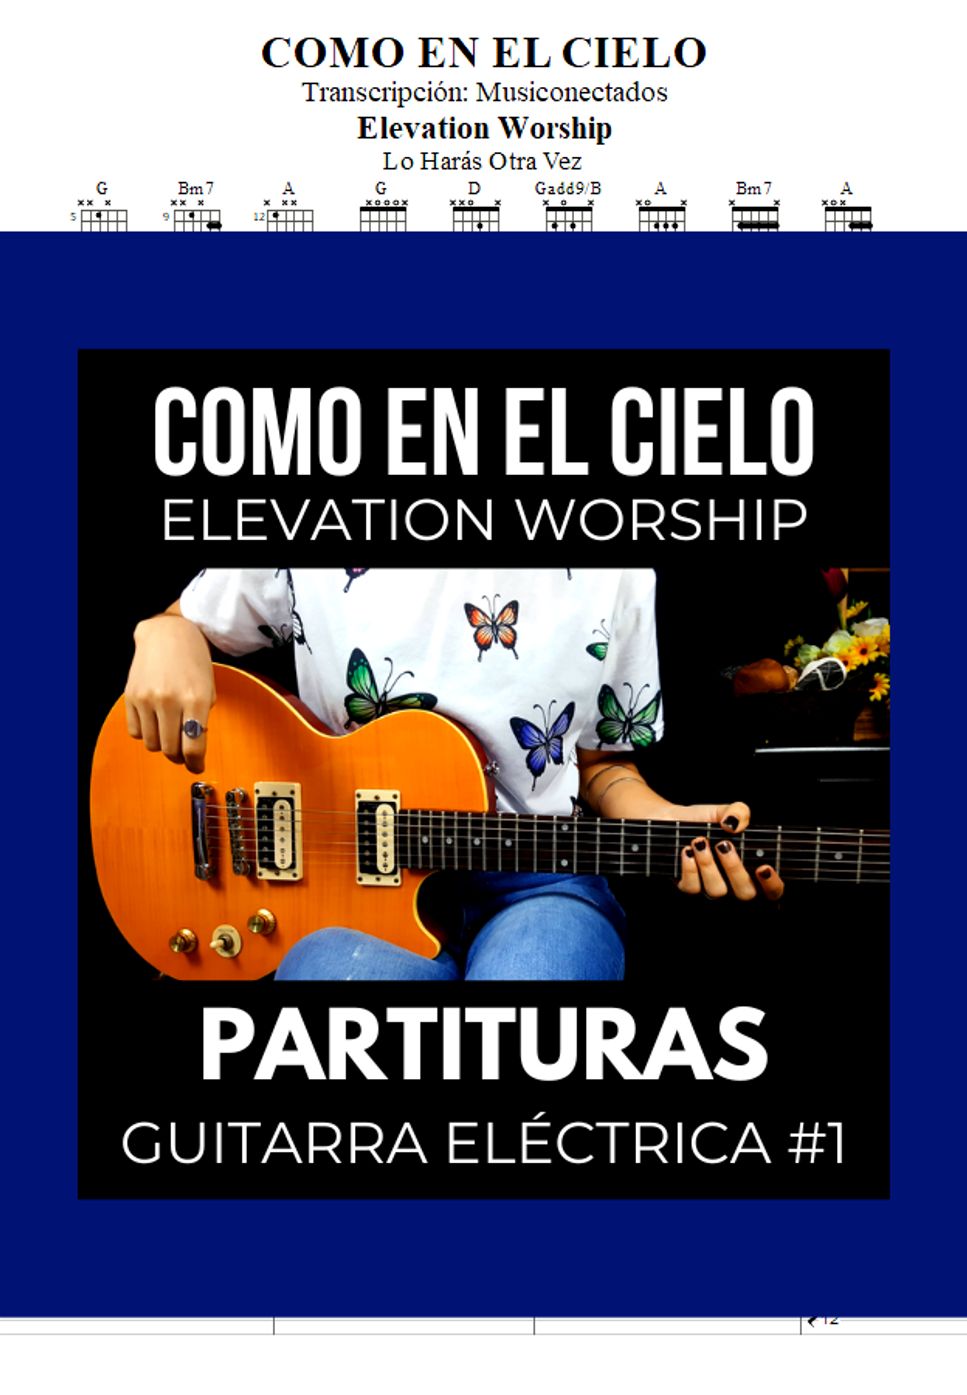 Elevation Worship - Como en el cielo by Elevation Worship